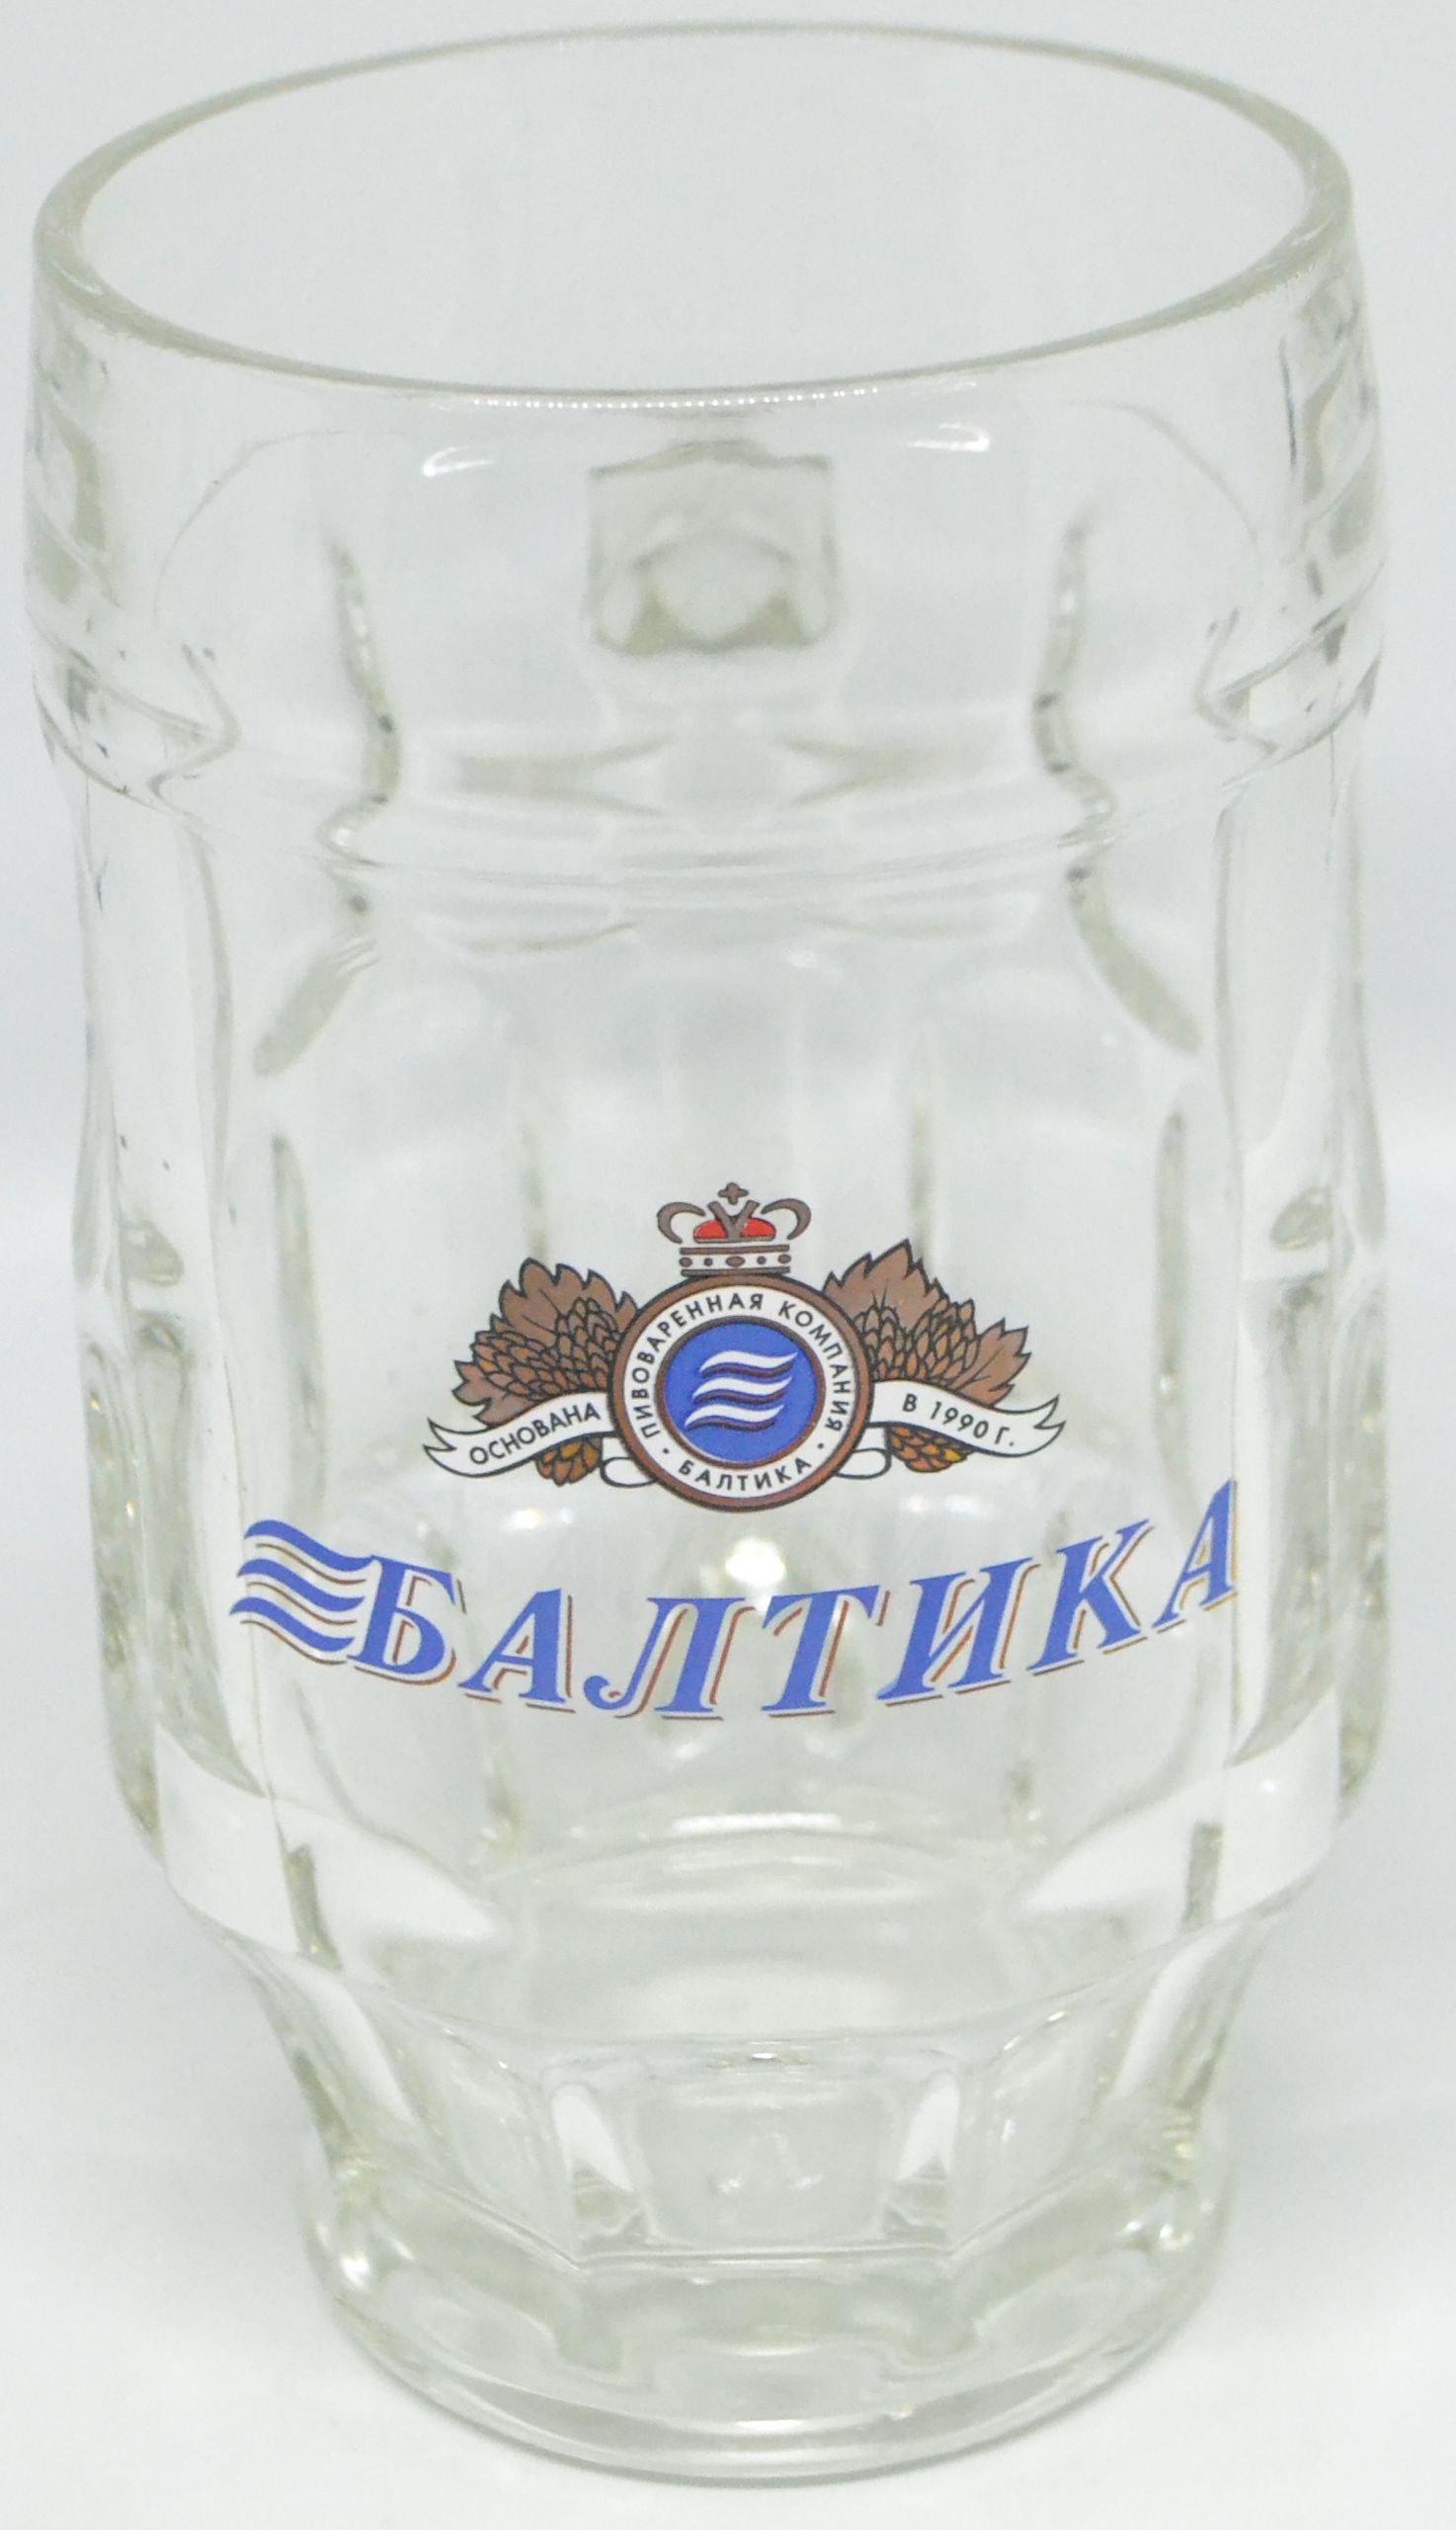 Балтика (кружка граненая) 0,5 от компании Нортэна